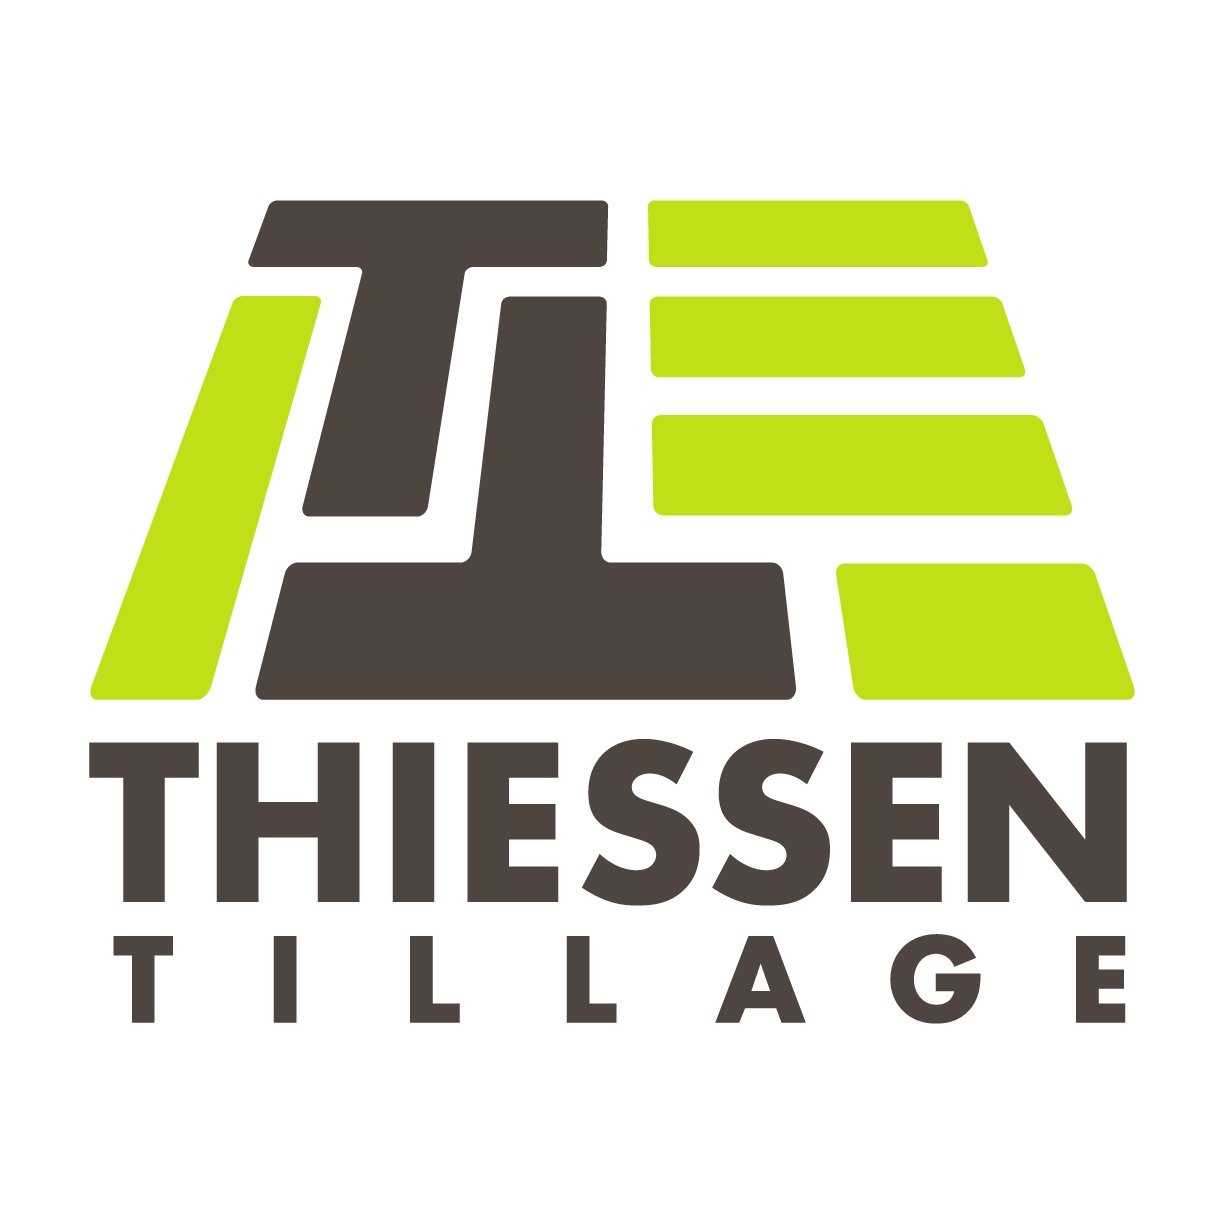 Thiessen Tillage Equipment